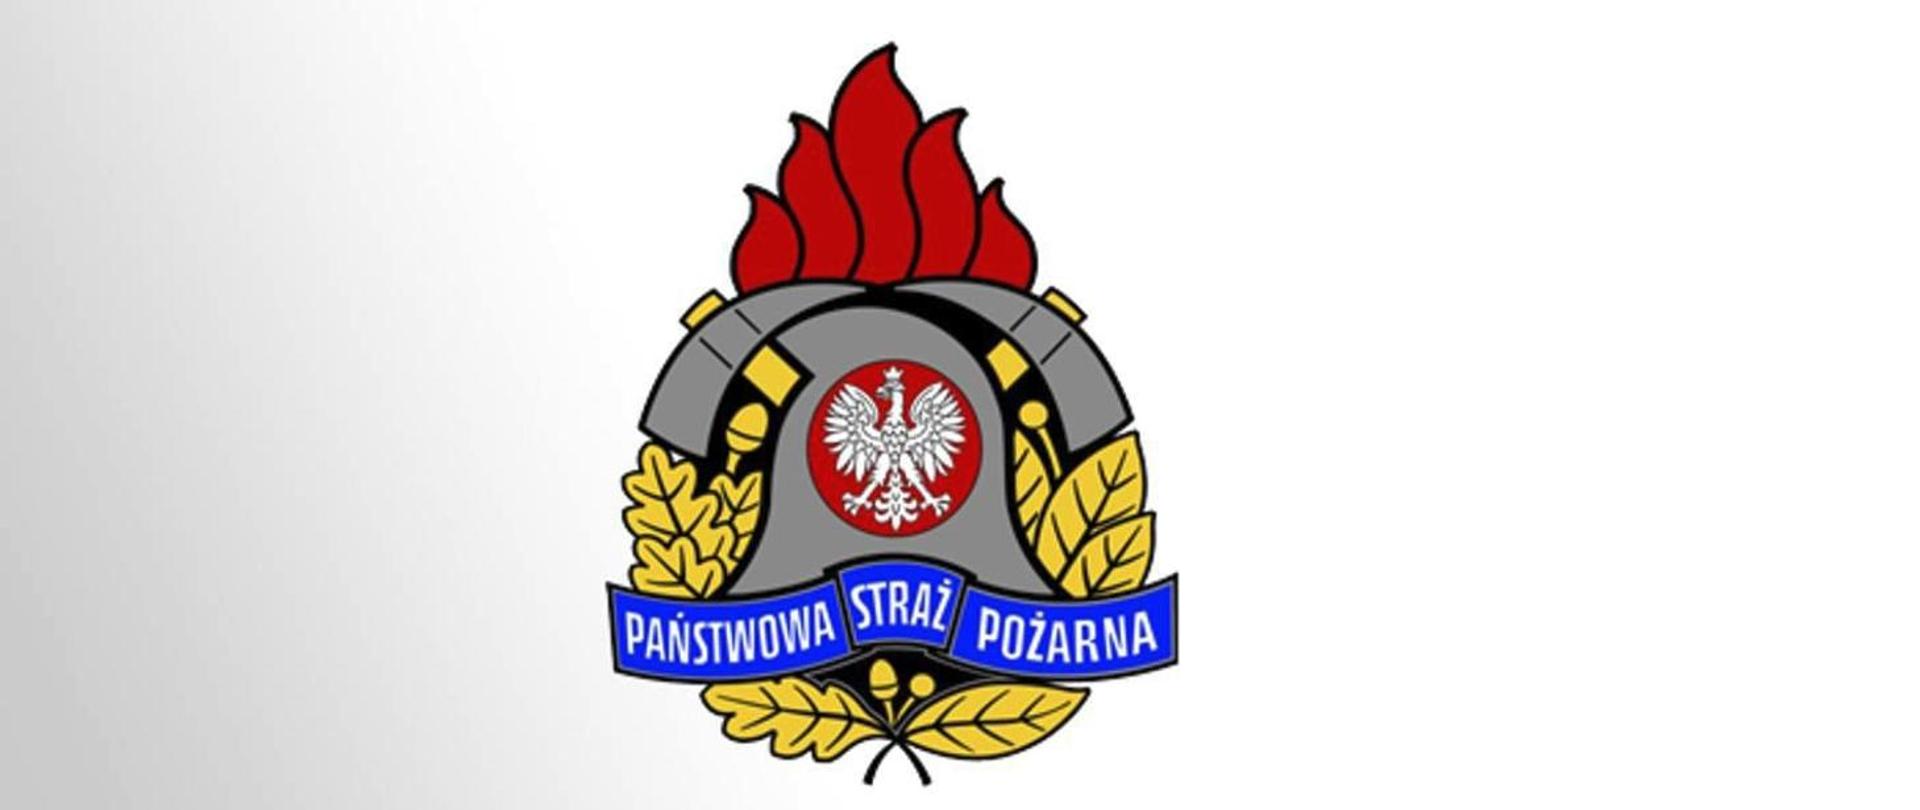 Zdjęcie przedstawia logo Państwowej Straży Pożarnej